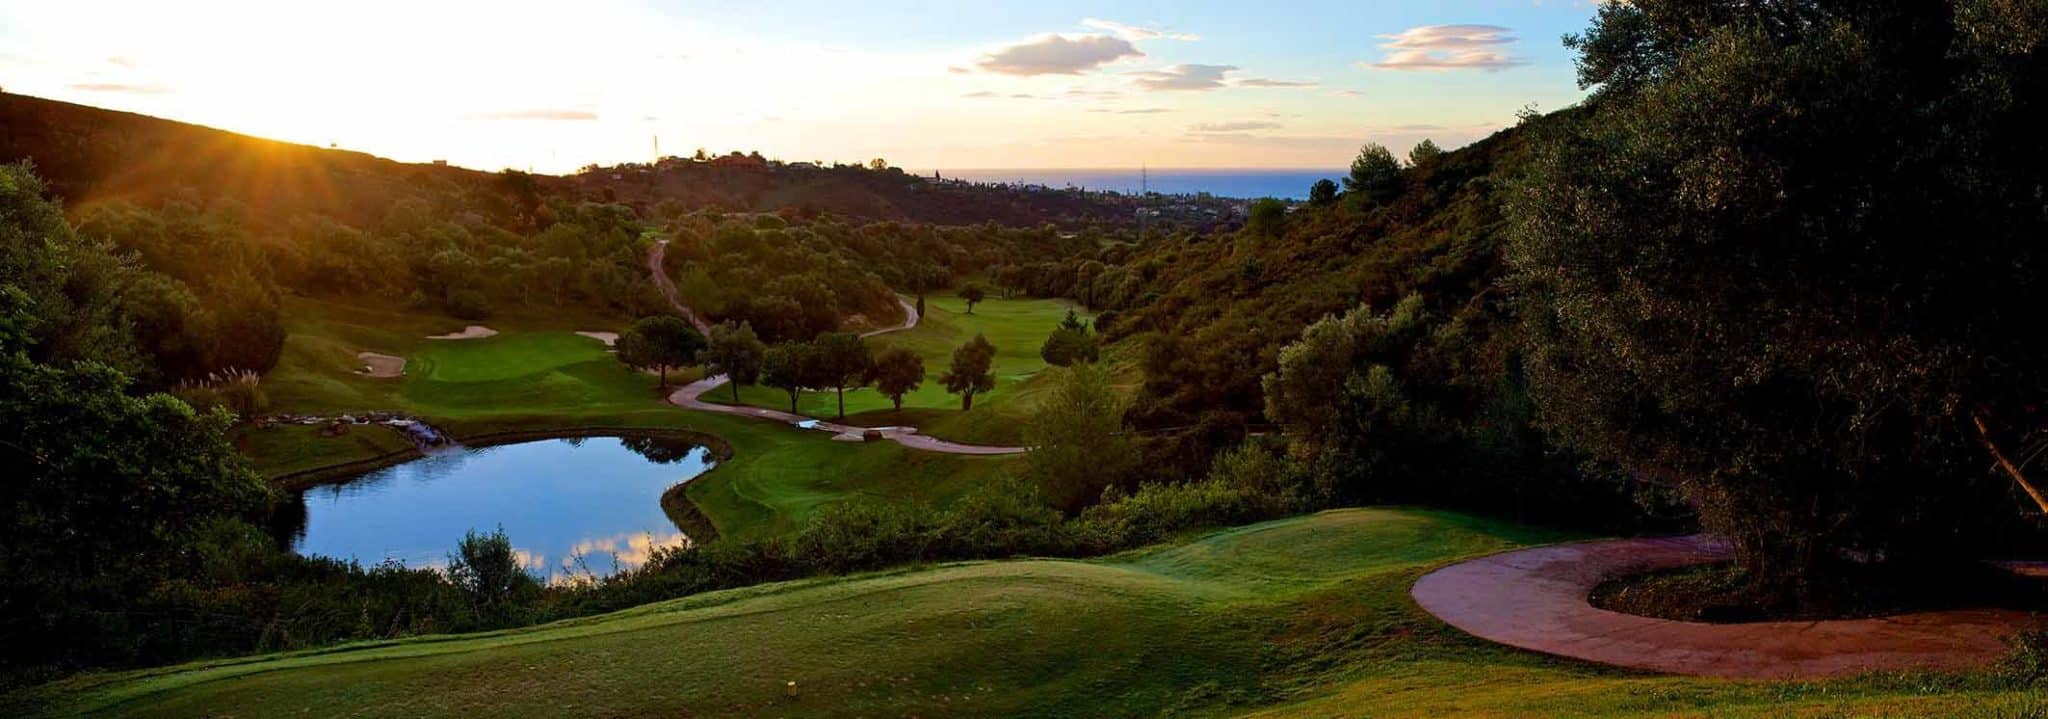 Marbella Golf & Club - Robert Trent Jones